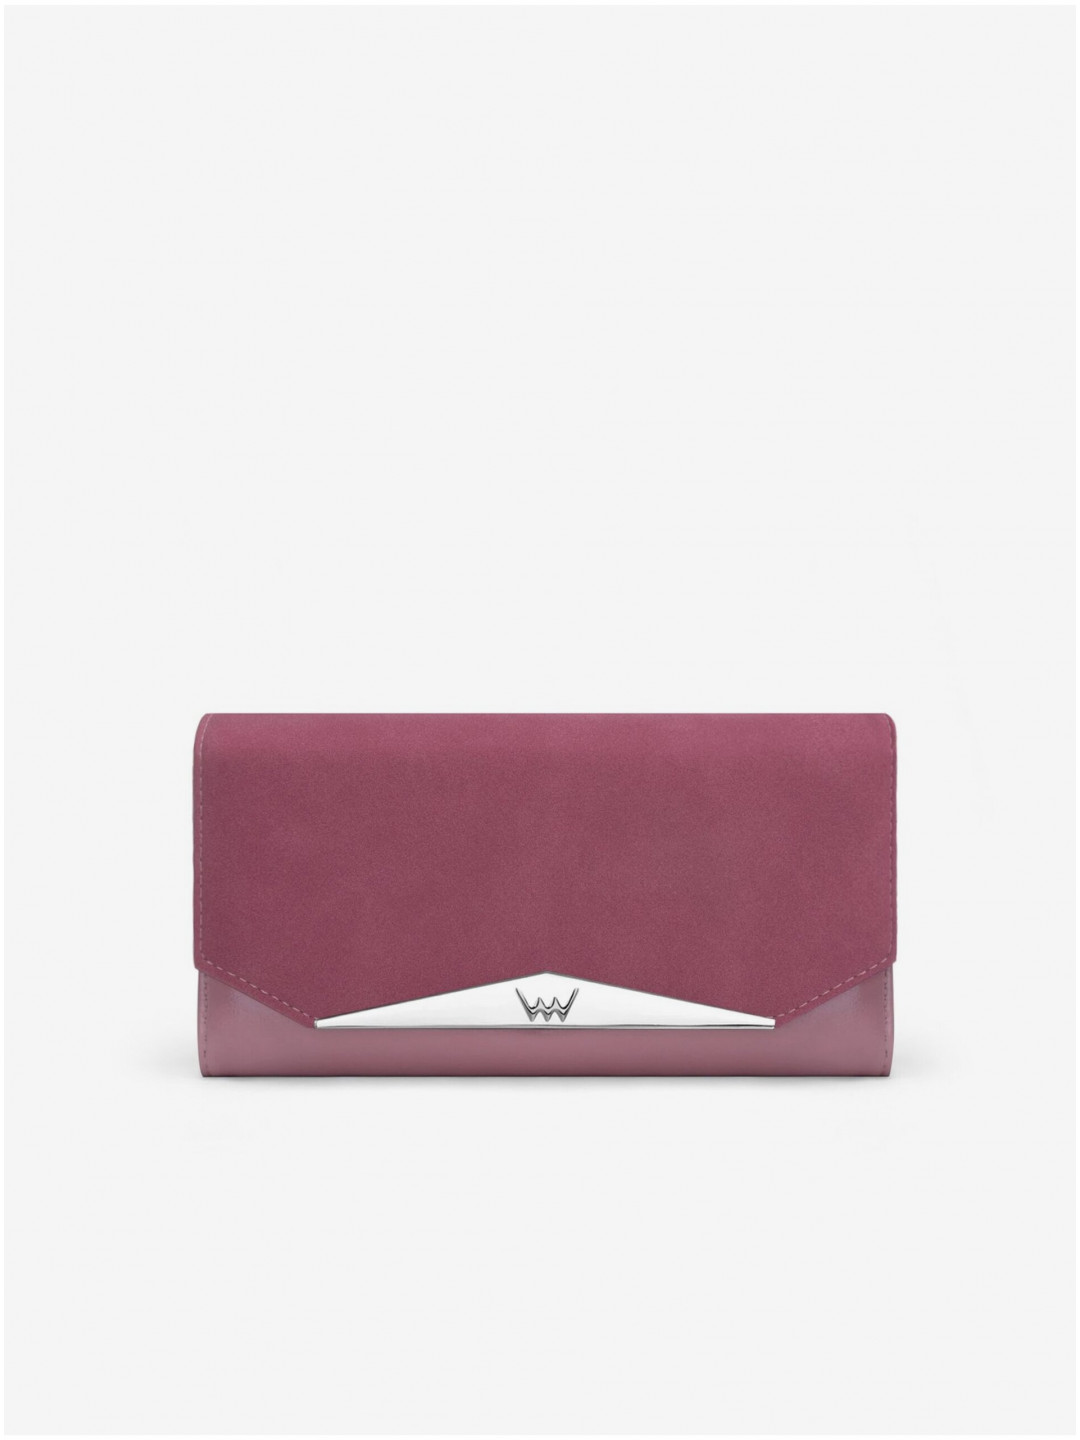 Fialová dámská peněženka Vuch Dara Purple